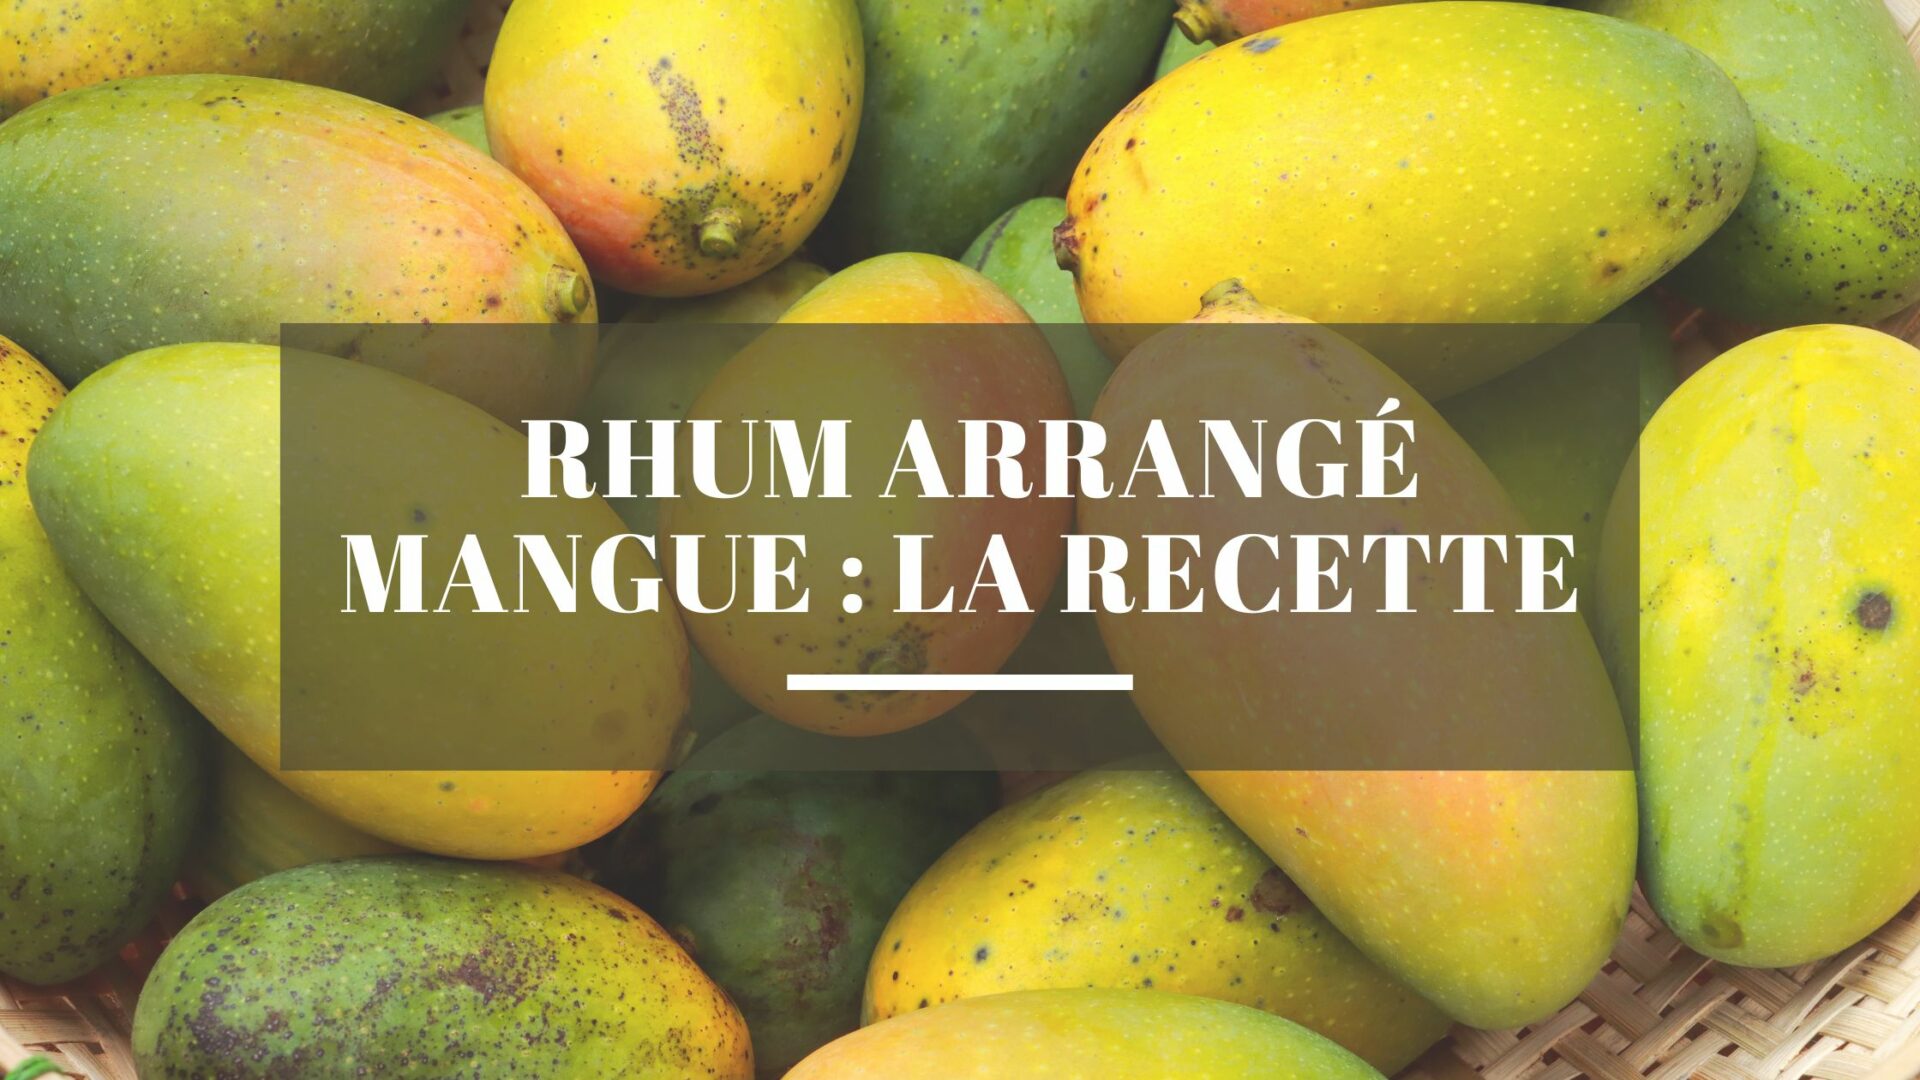 You are currently viewing Rhum arrangé mangue : La recette